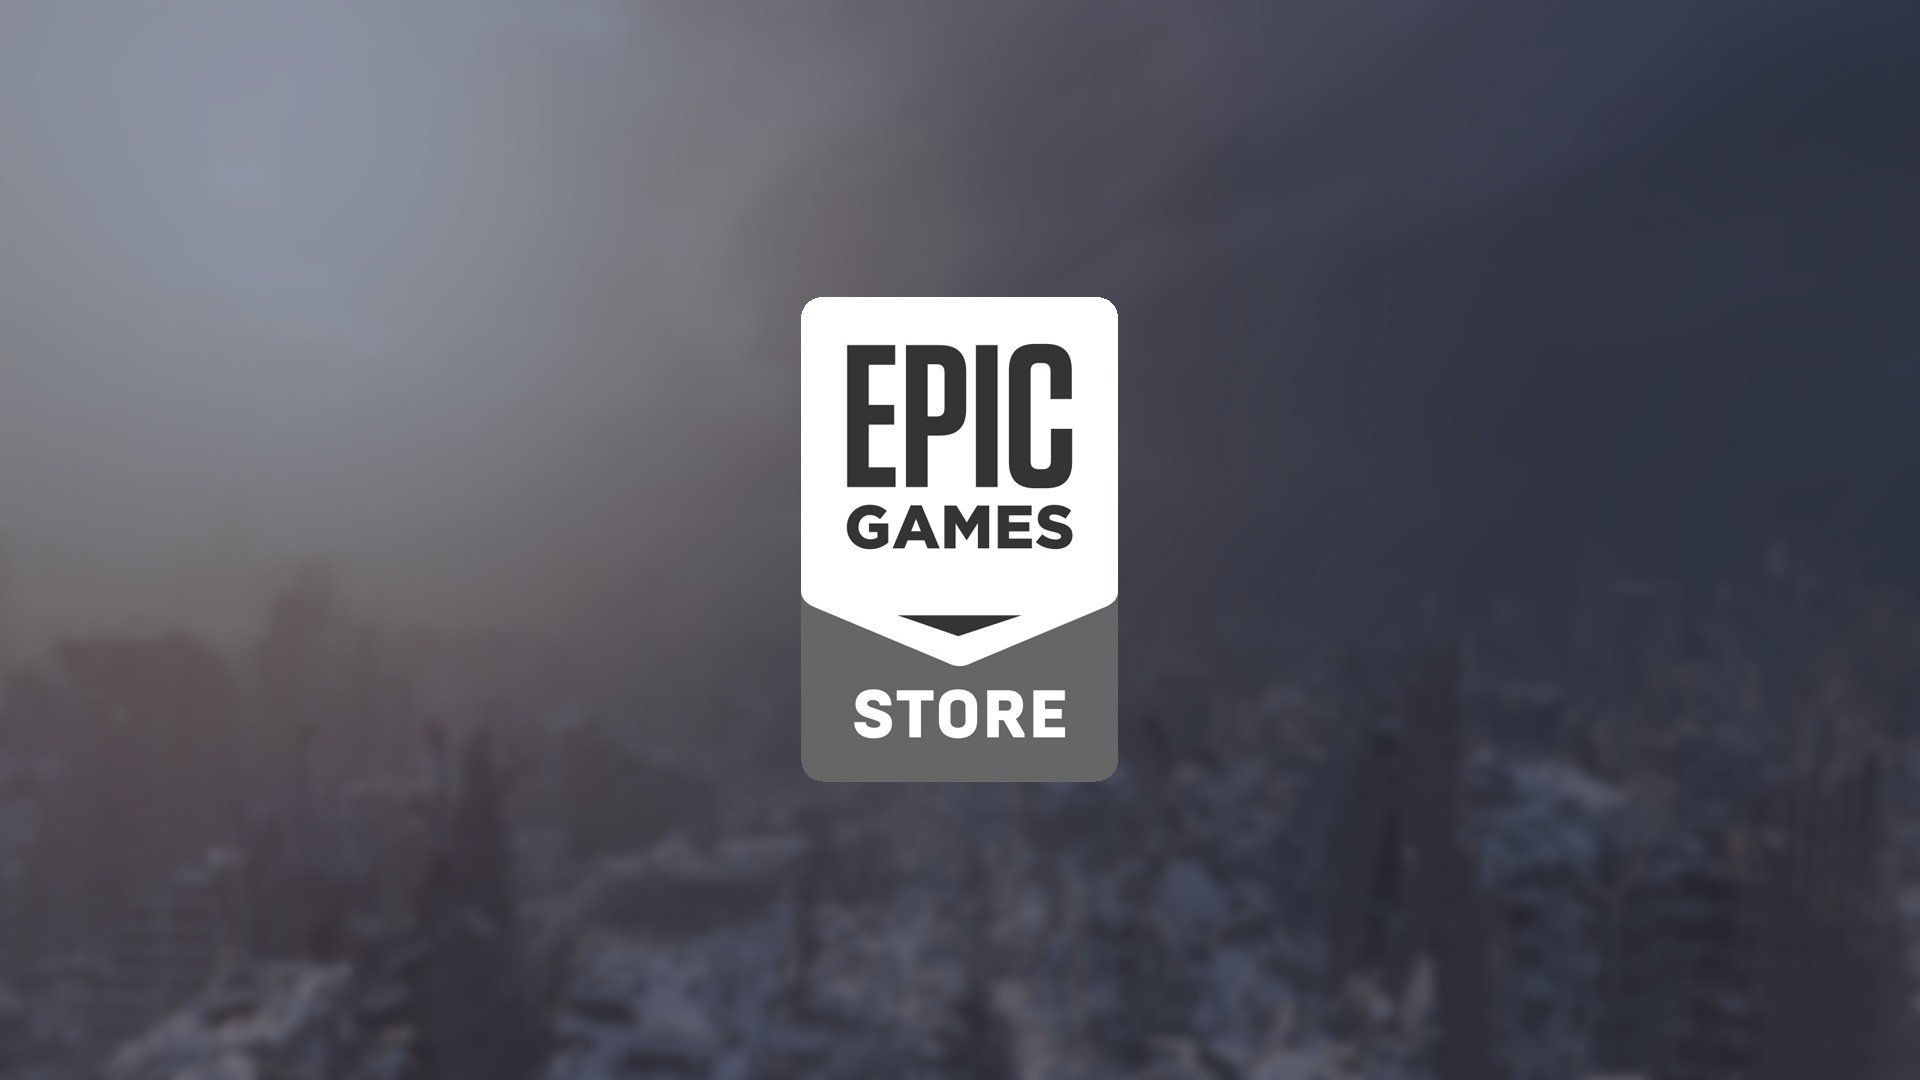 Golden Light é o jogo grátis da semana na Epic Games Store